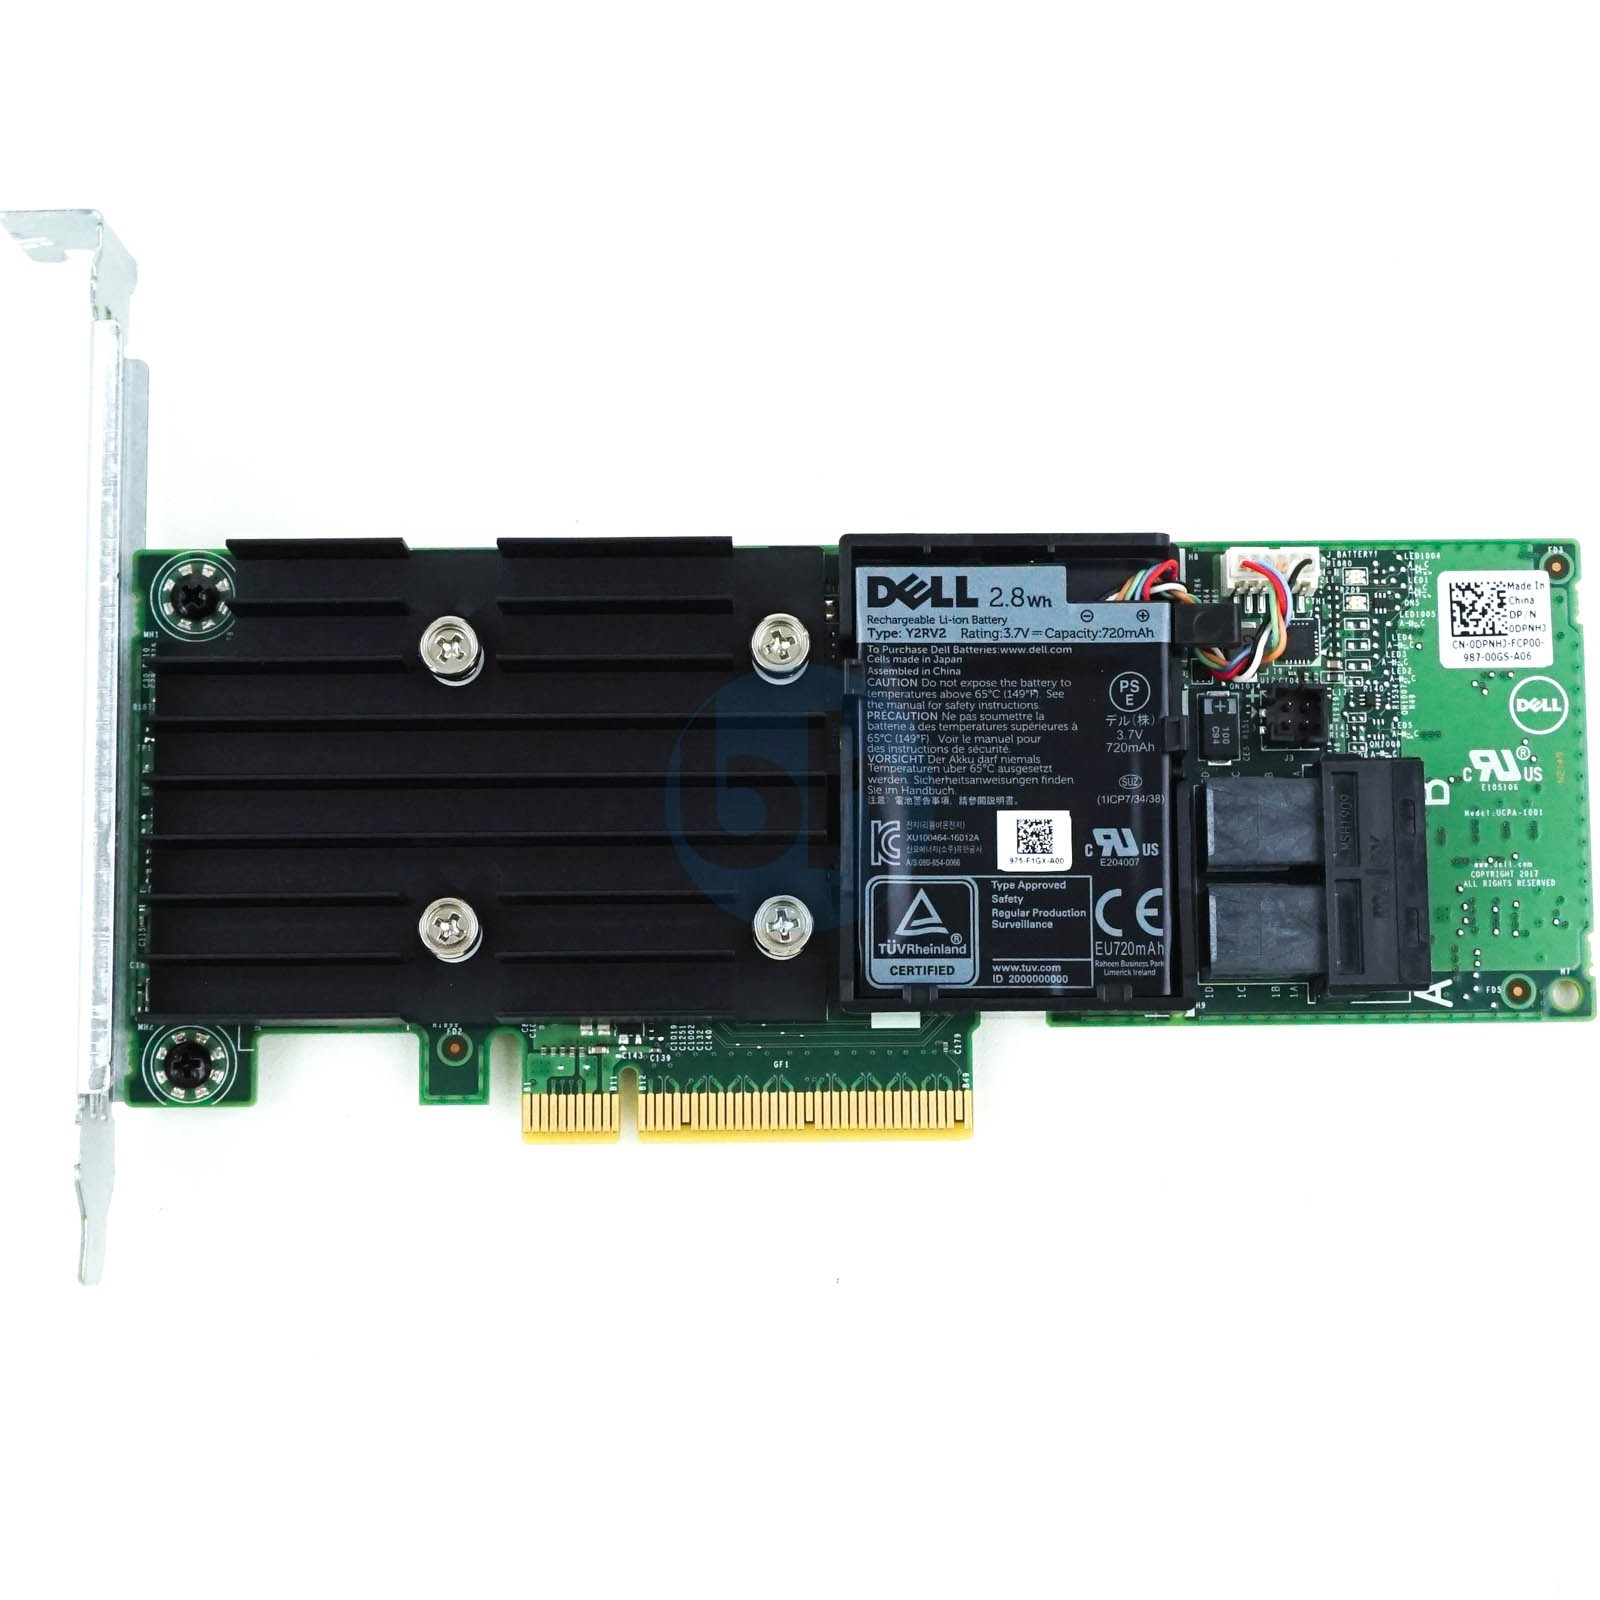 Dell PERC H740p 8GB Non-Volatile FH PCIe-x8 Internal RAID Controller